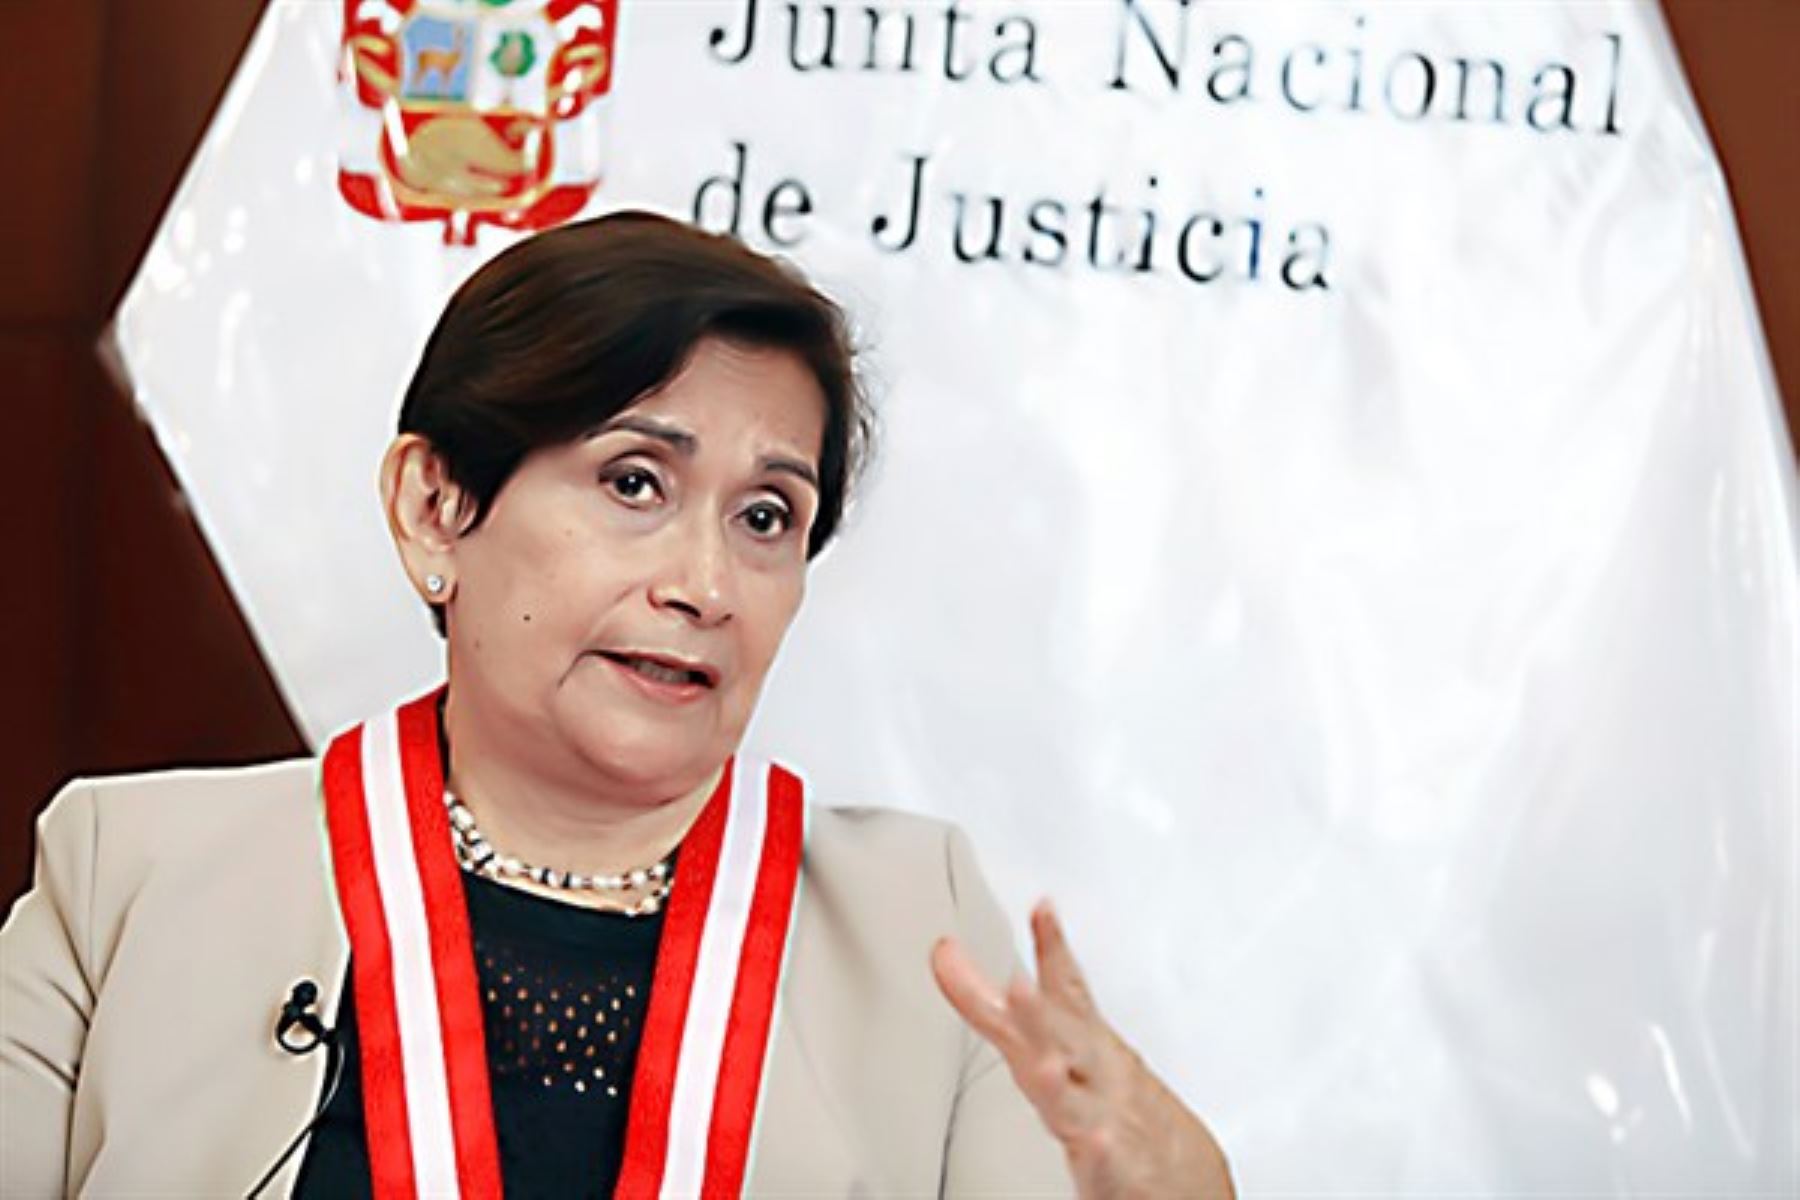 Presidenta de la Junta Nacional de Justicia (JNJ), Luz Inés Tello